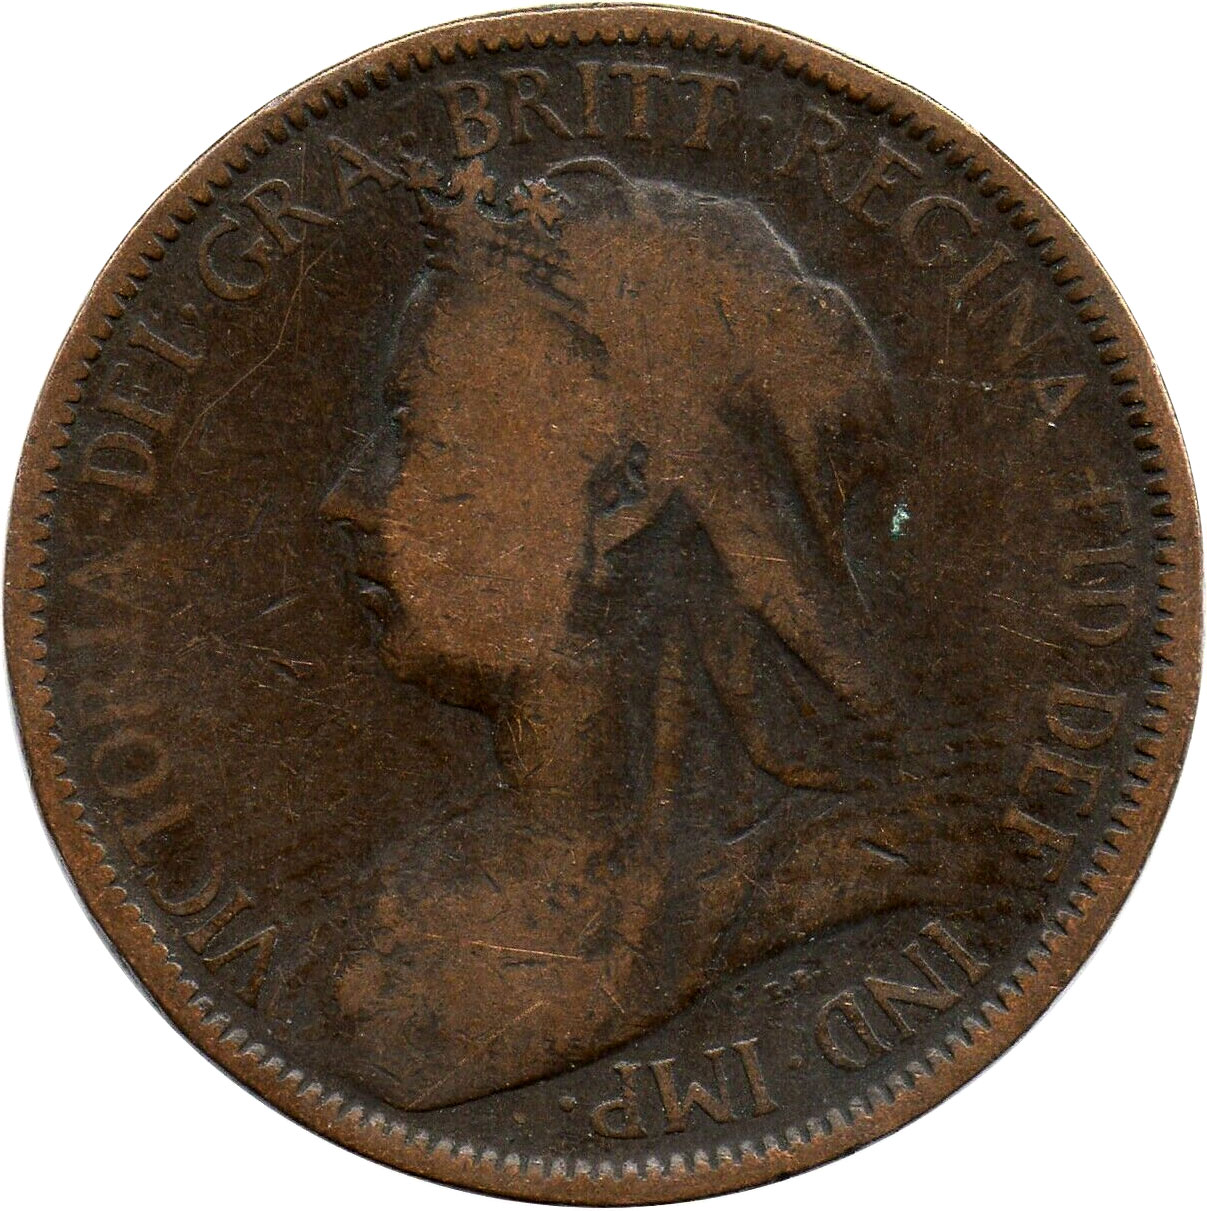 VG-8 - Half Penny 1895 to 1901 - Victoria - Old Head